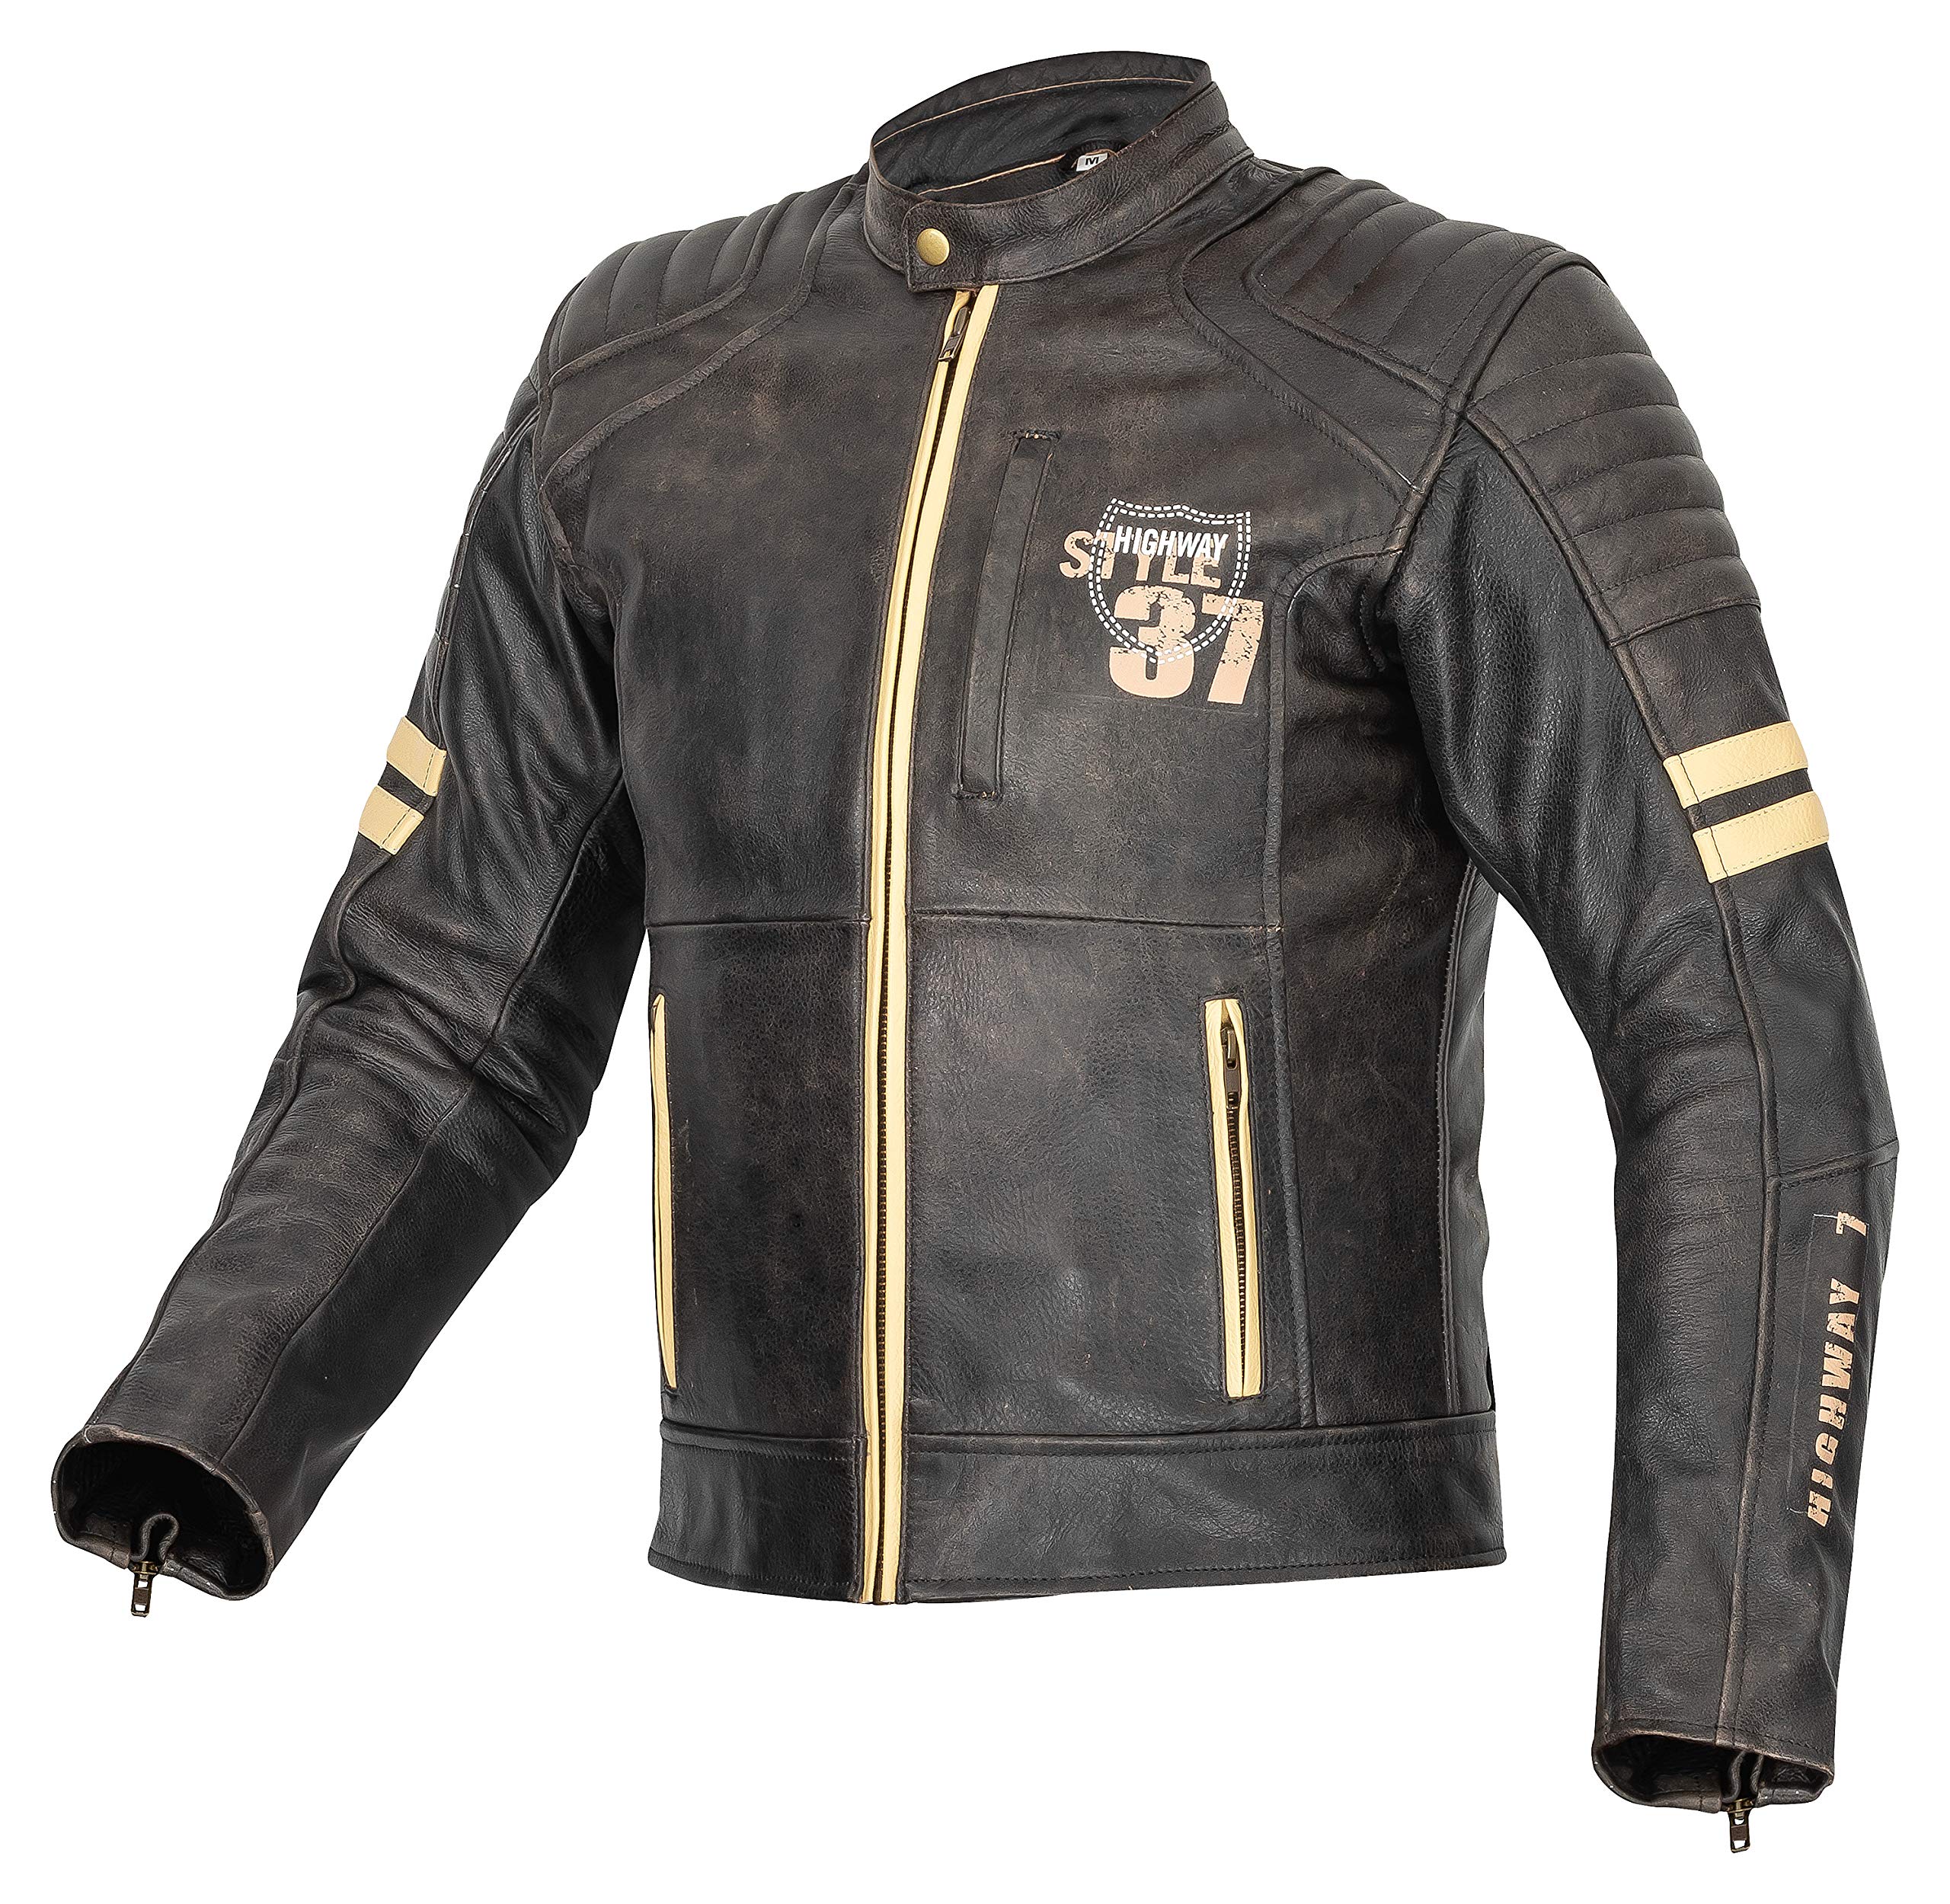 XLS Motorradjacke, Herren, Motorrad Lederjacke in Retro-Look, Echtleder, Vintage Bikerjacke, Grau, Chopper Jacke (XL)